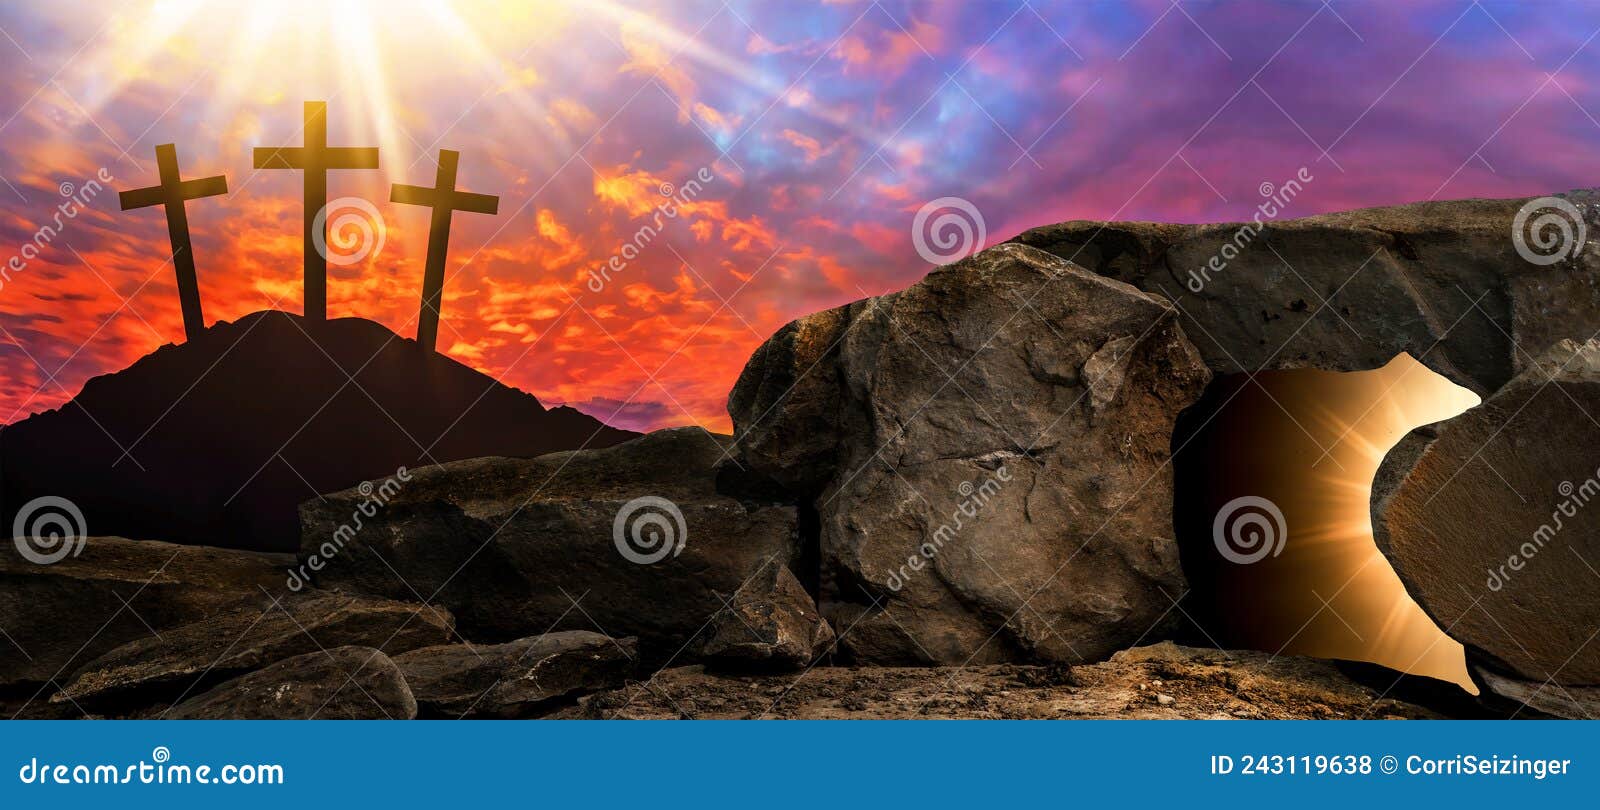 ostern religiÃÂ¶ser hintergrund gruÃÅ¸karte - kreuzigung und auferstehung jesus christus in golgatha golgota, mit hell